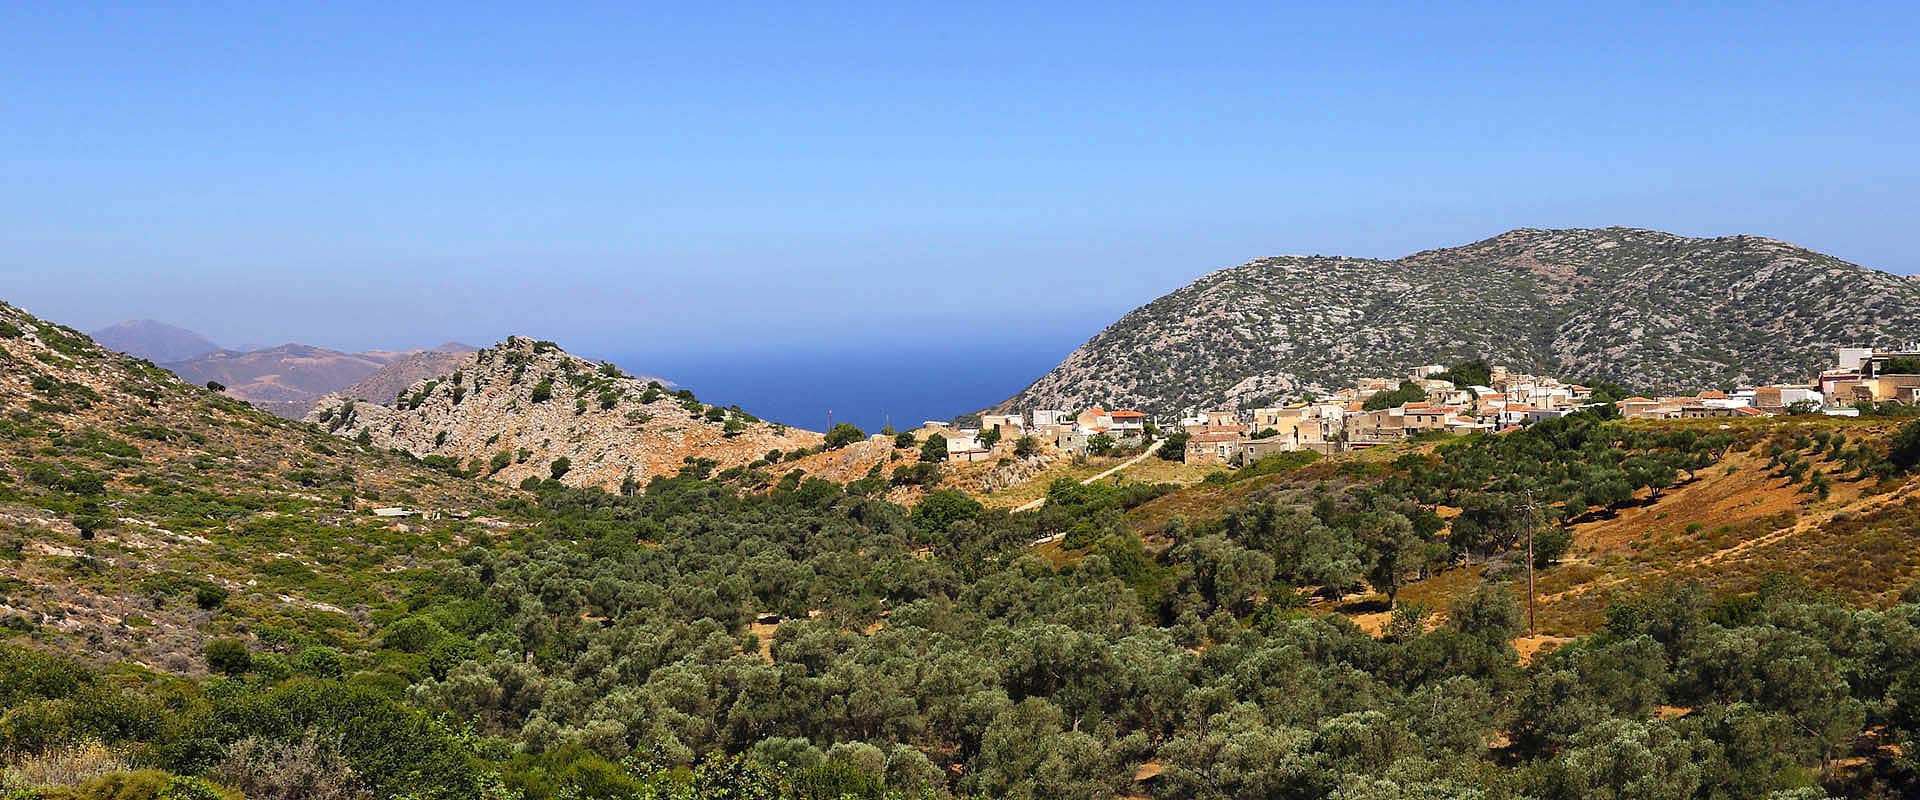 Ökotourismus-Hotelvillen auf Kreta Griechenland